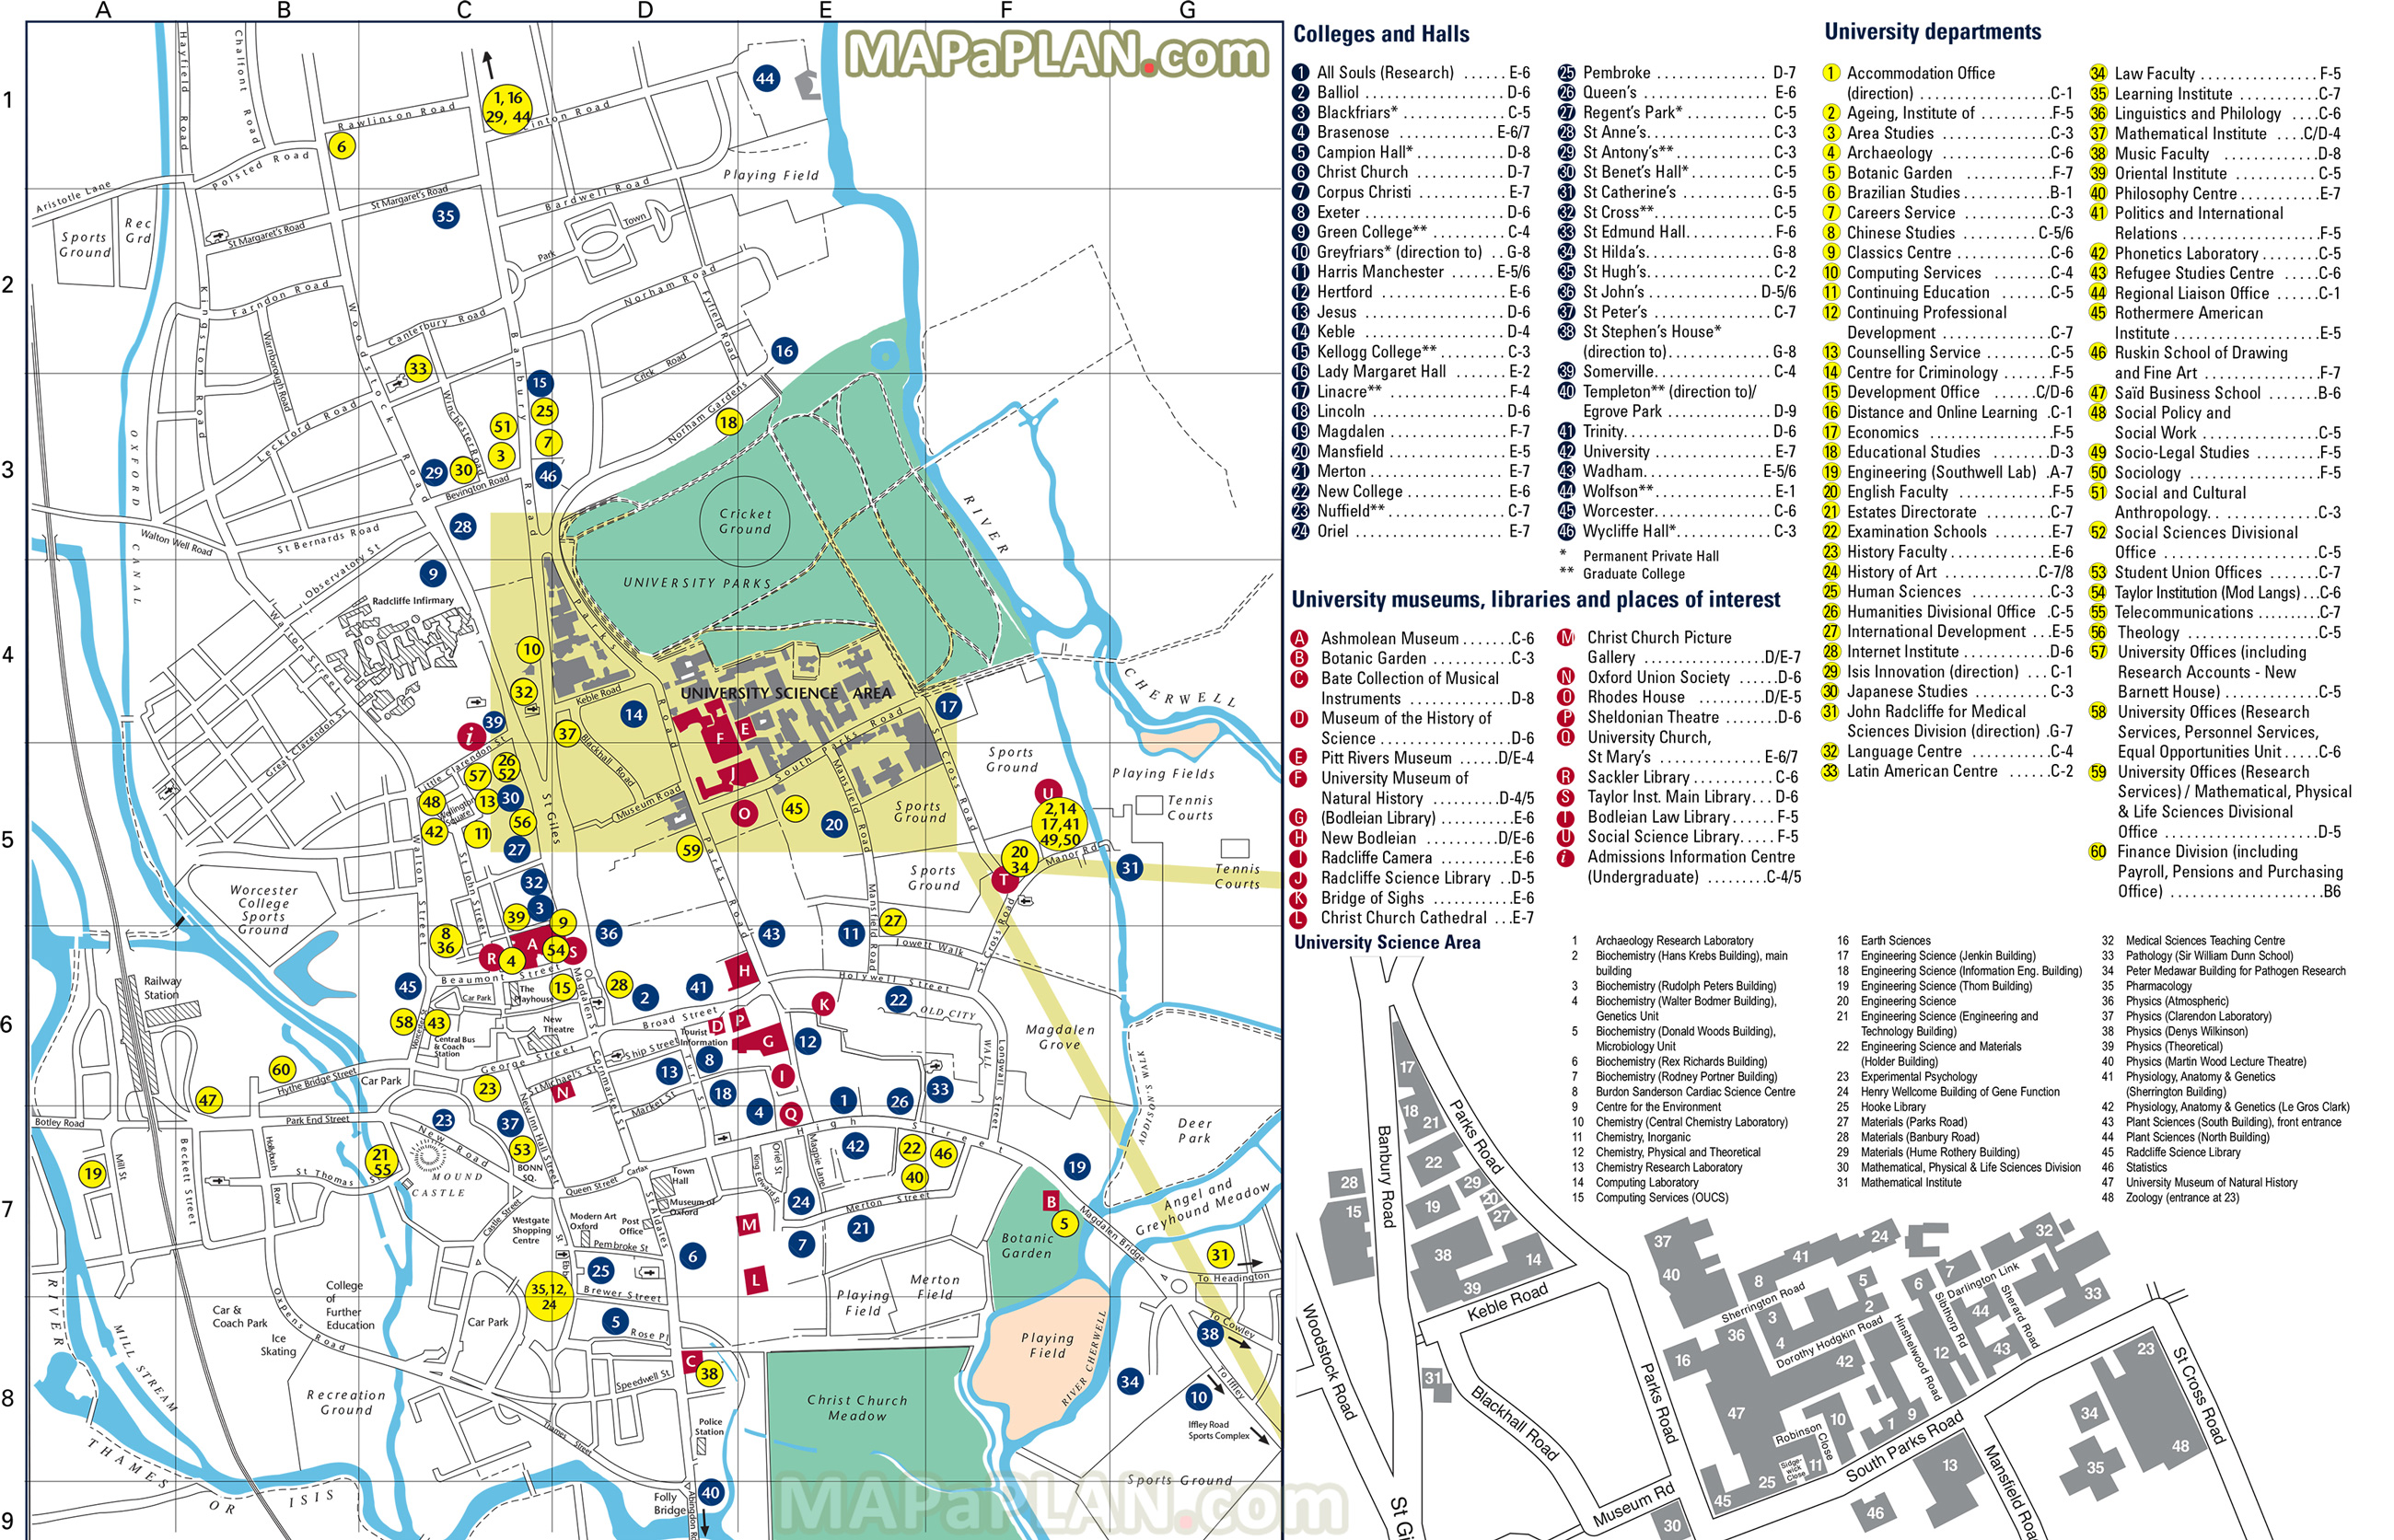 Oxford City Maps Pdf